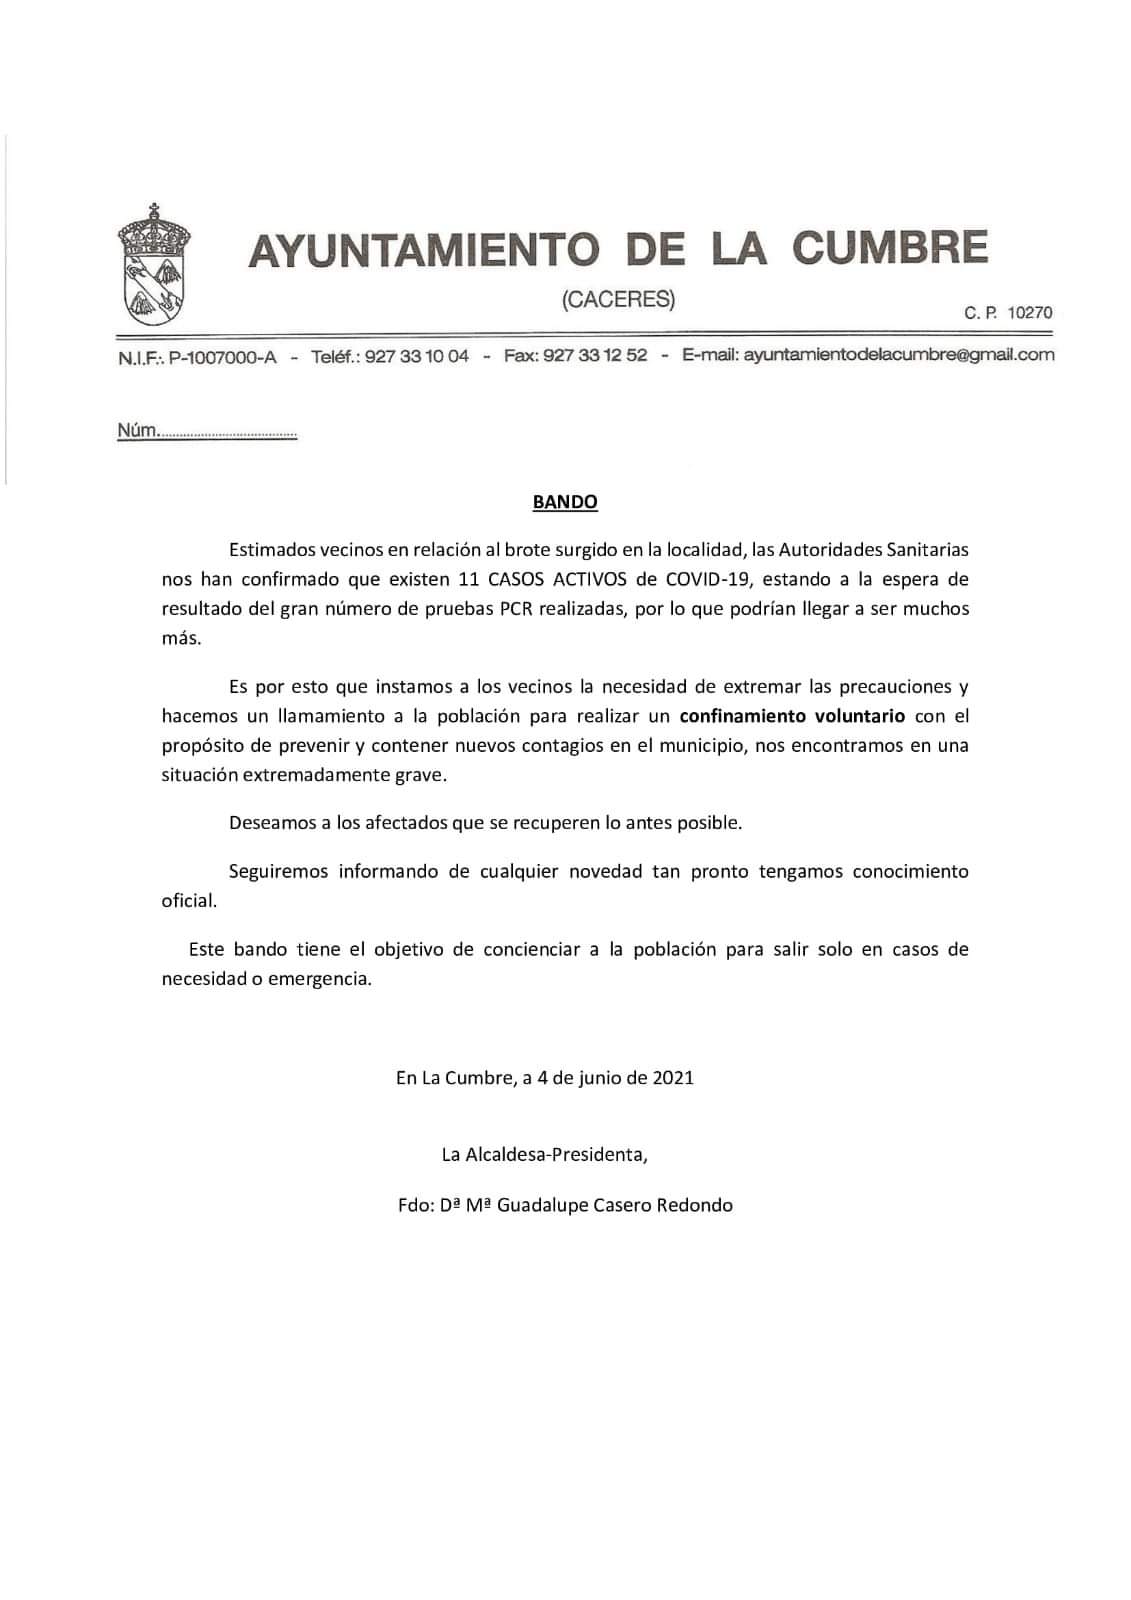 Brote y 11 casos positivos de COVID-19 (junio 2021) - La Cumbre (Cáceres)